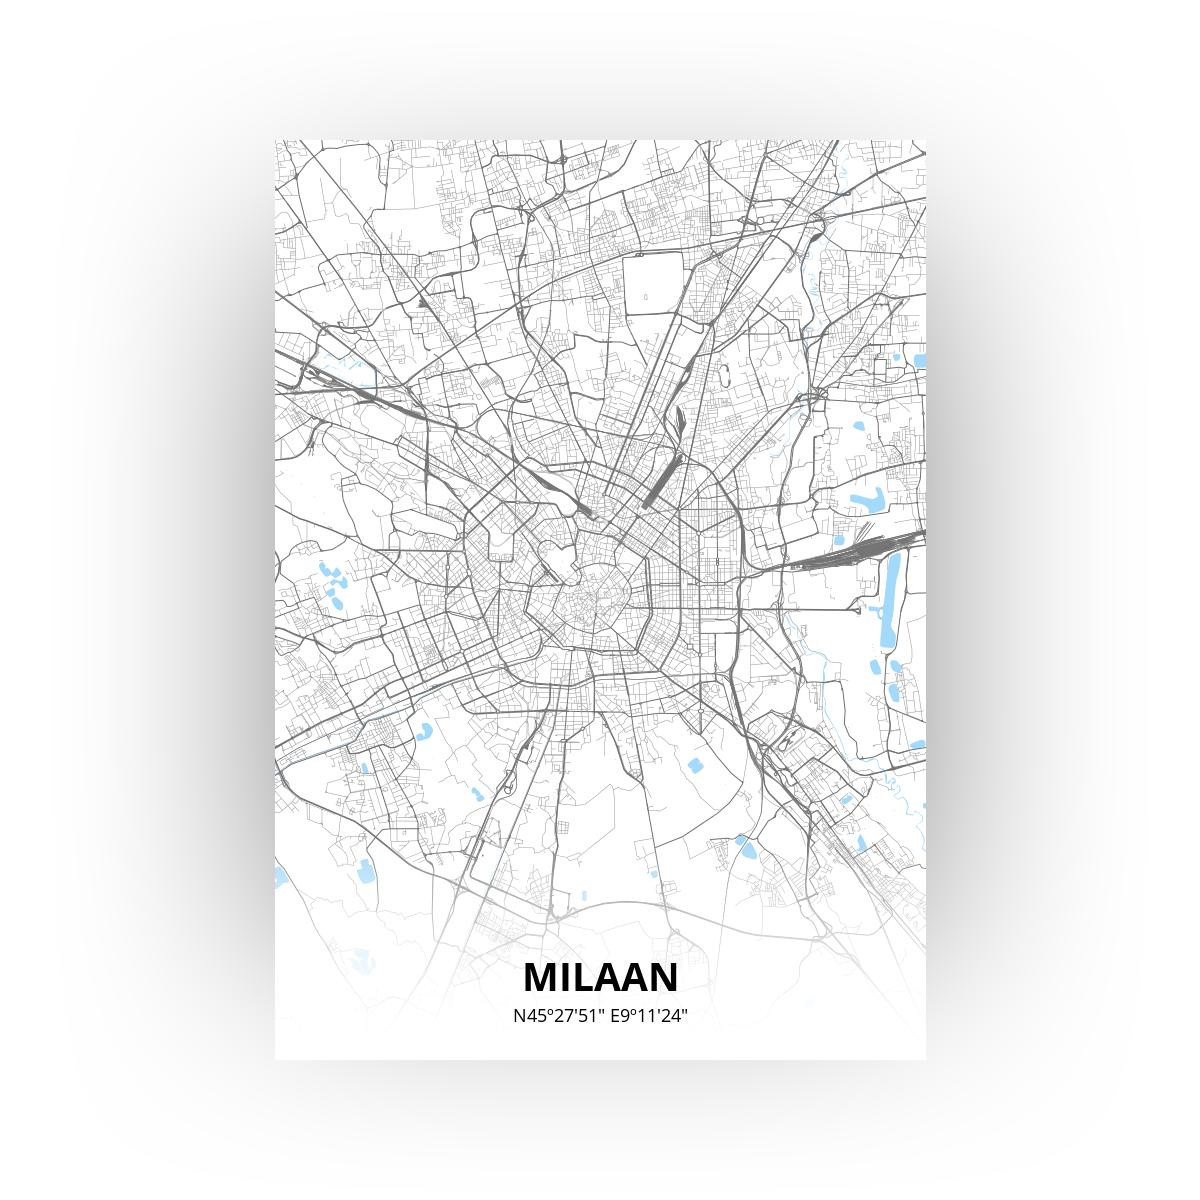 Milaan poster - Zelf aan te passen!